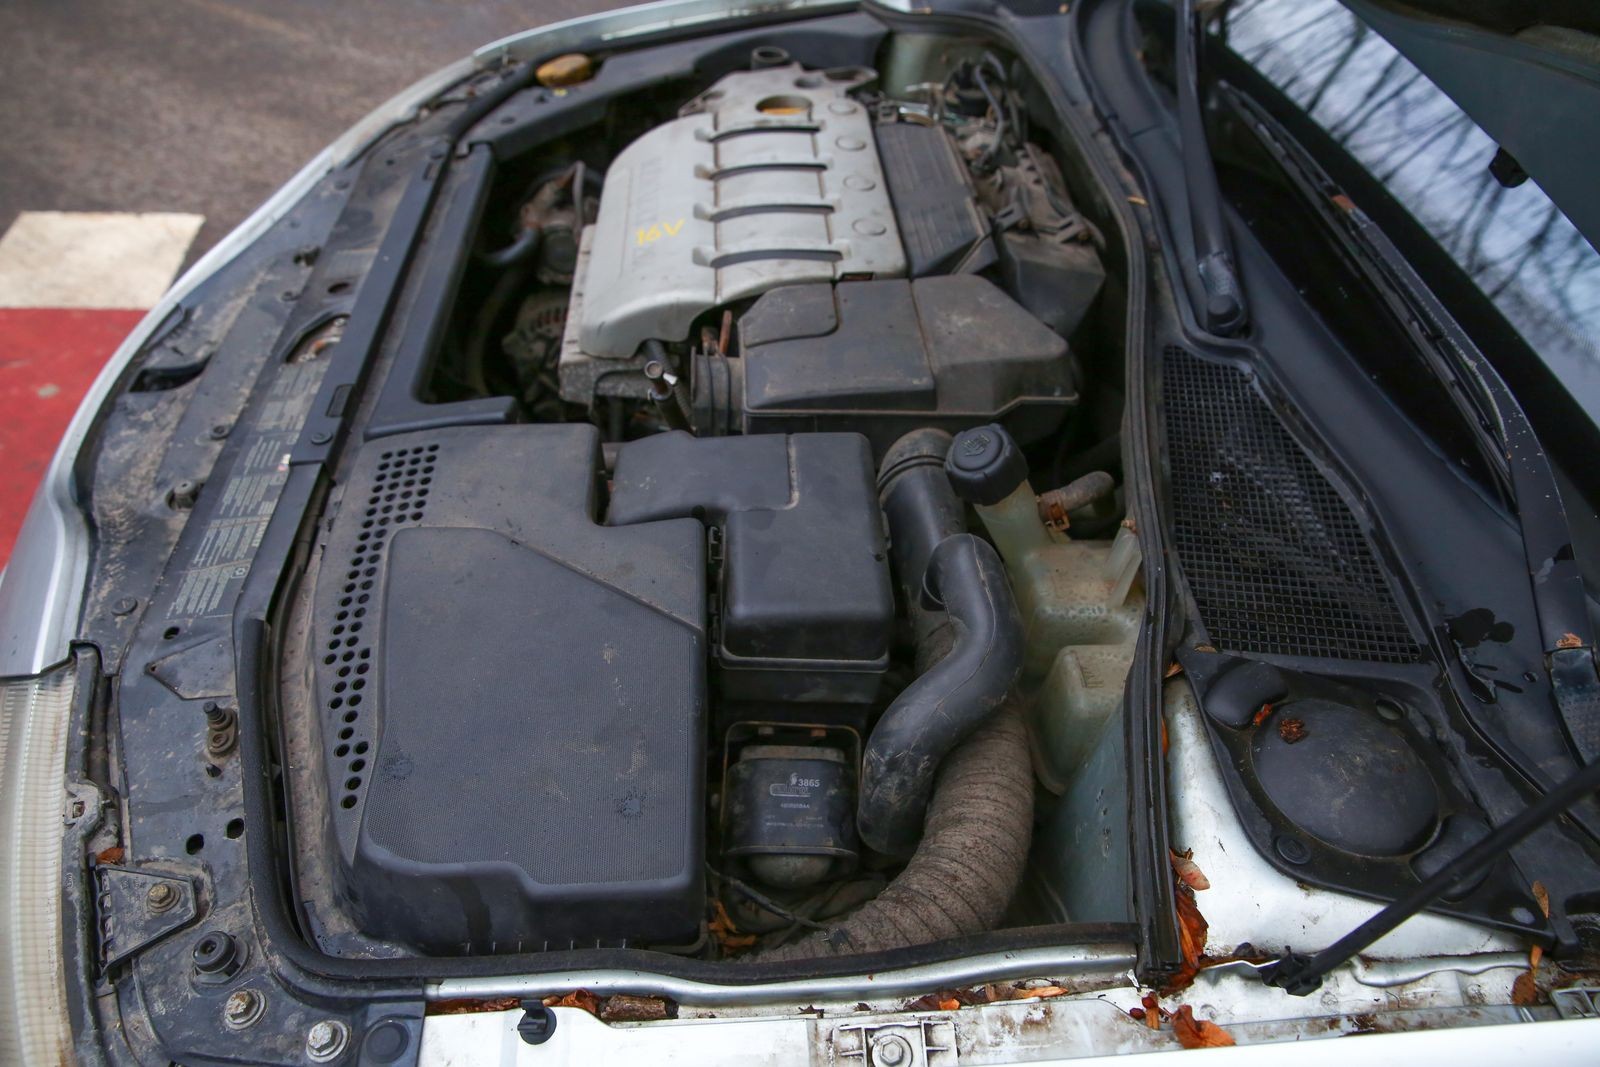 Типичные проблемы и надежность Renault Laguna II: отзывы владельцев